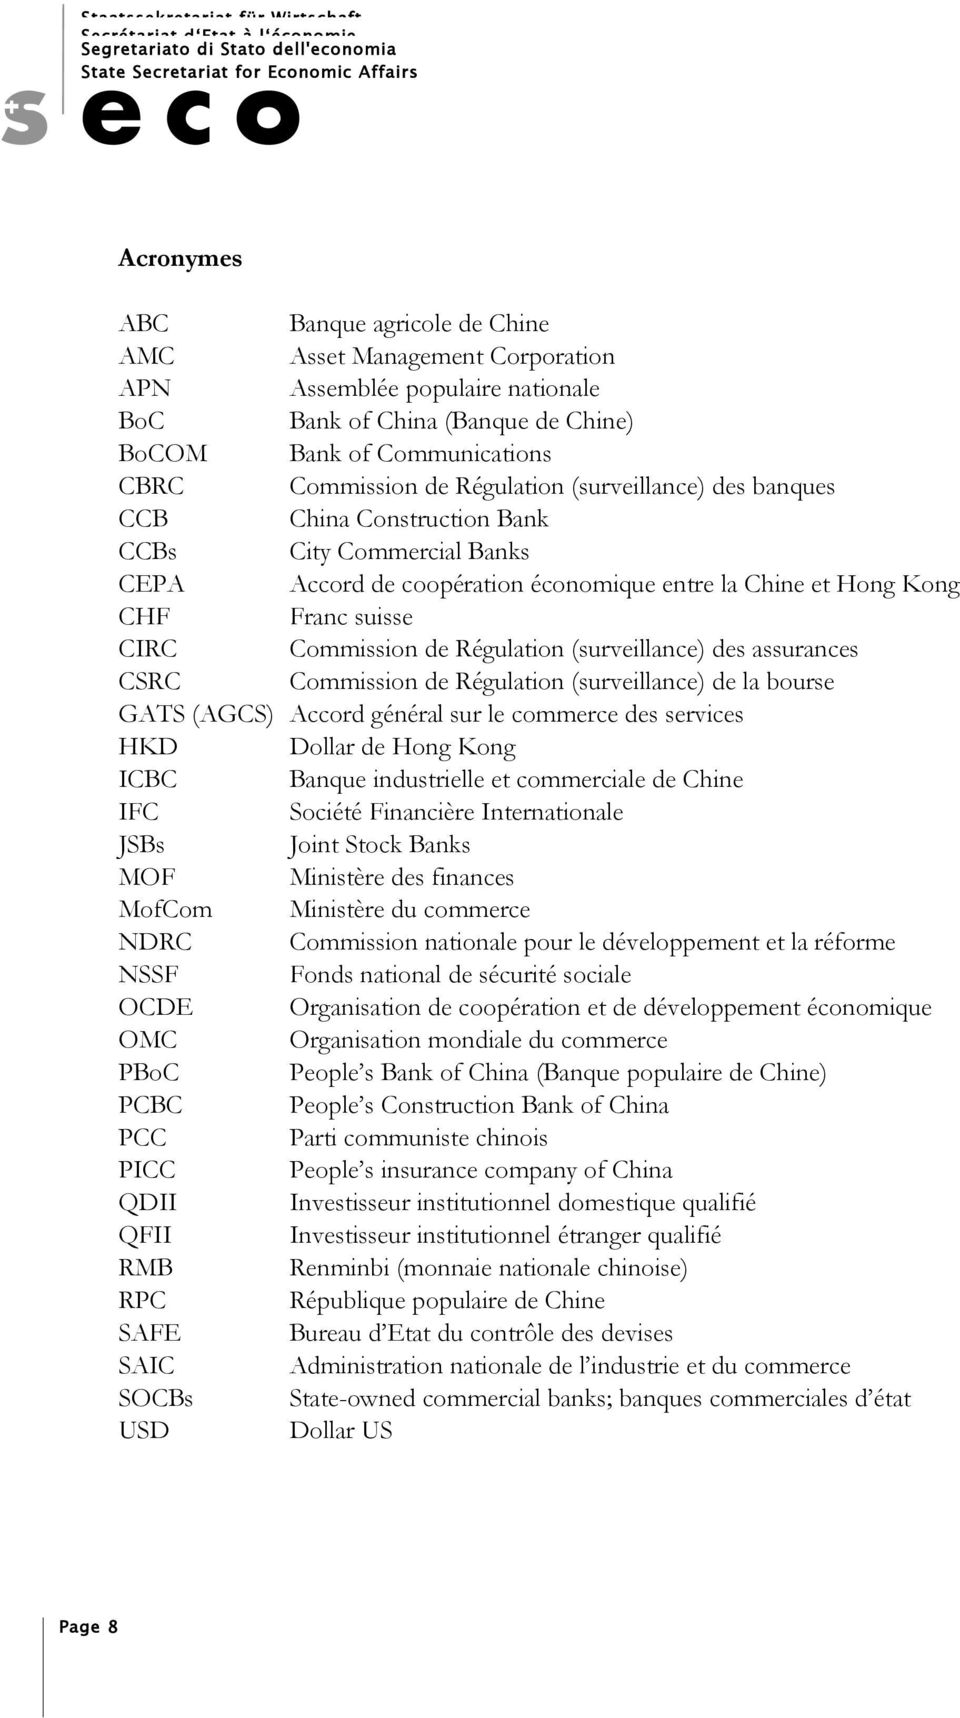 Régulation (surveillance) des assurances CSRC Commission de Régulation (surveillance) de la bourse GATS (AGCS) Accord général sur le commerce des services HKD Dollar de Hong Kong ICBC Banque